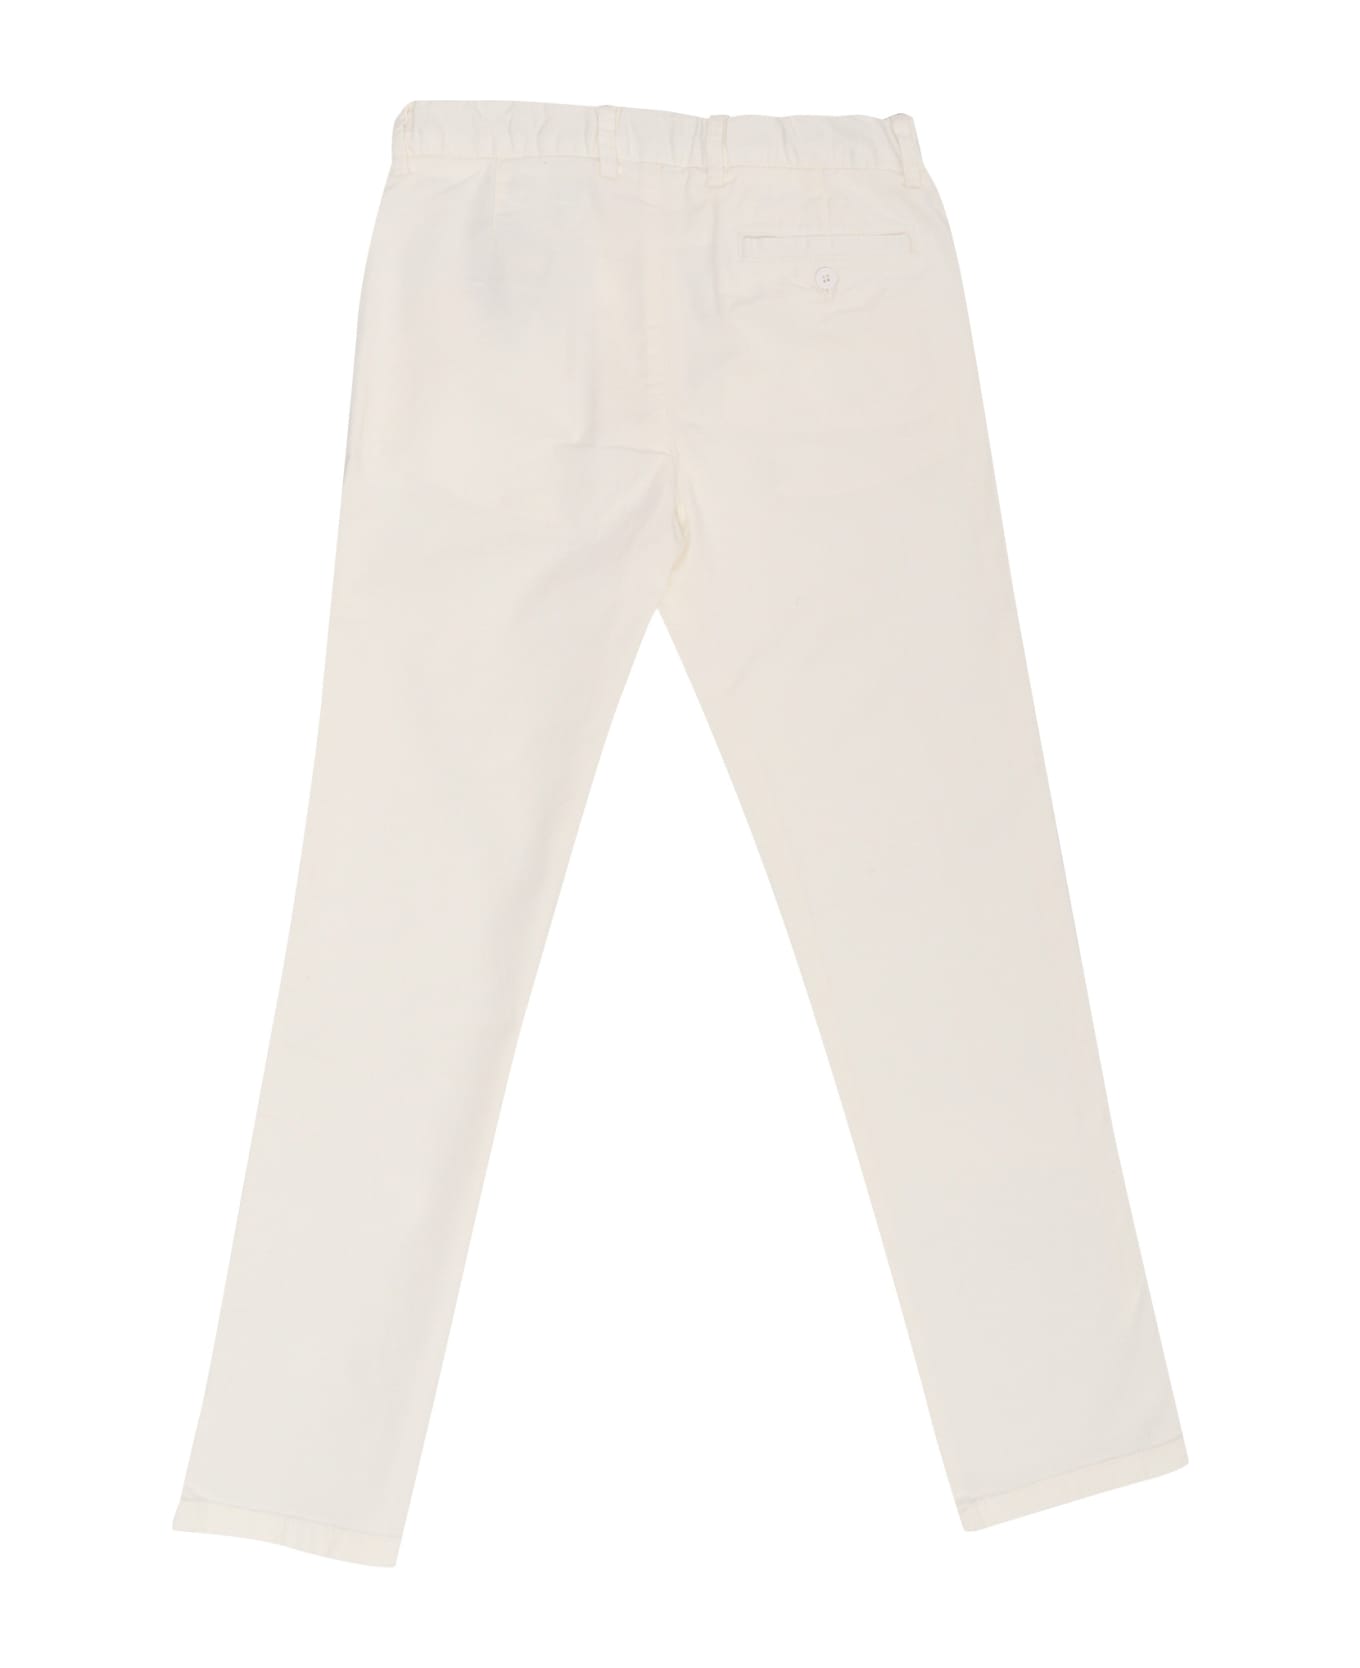 Il Gufo Cotton Trousers - WHITE ボトムス